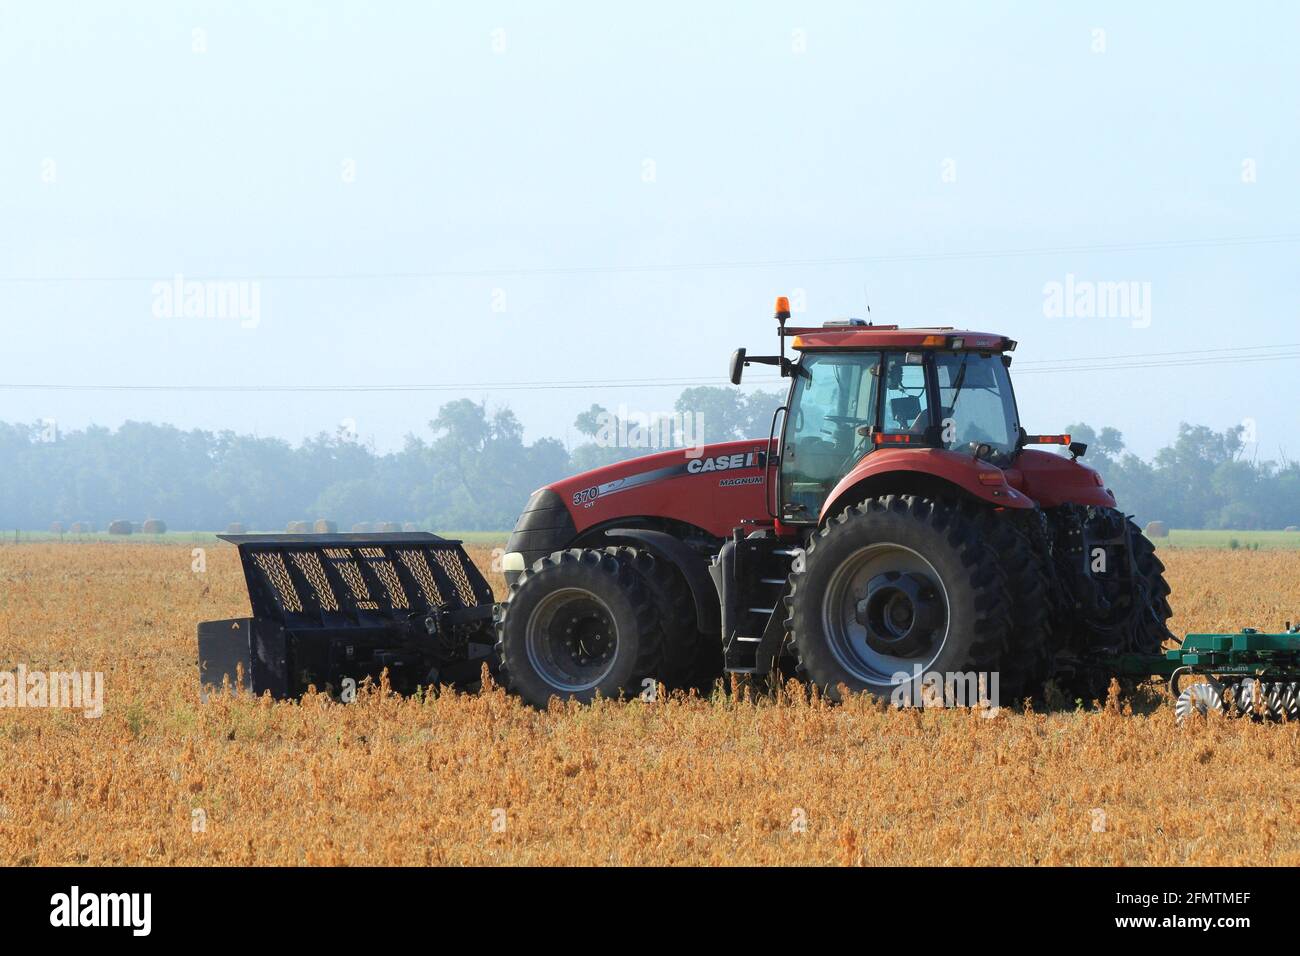 Tractor Magnum Case International 370 en un campo de granja en una mañana de niebla en el país en Kansas. Foto de stock